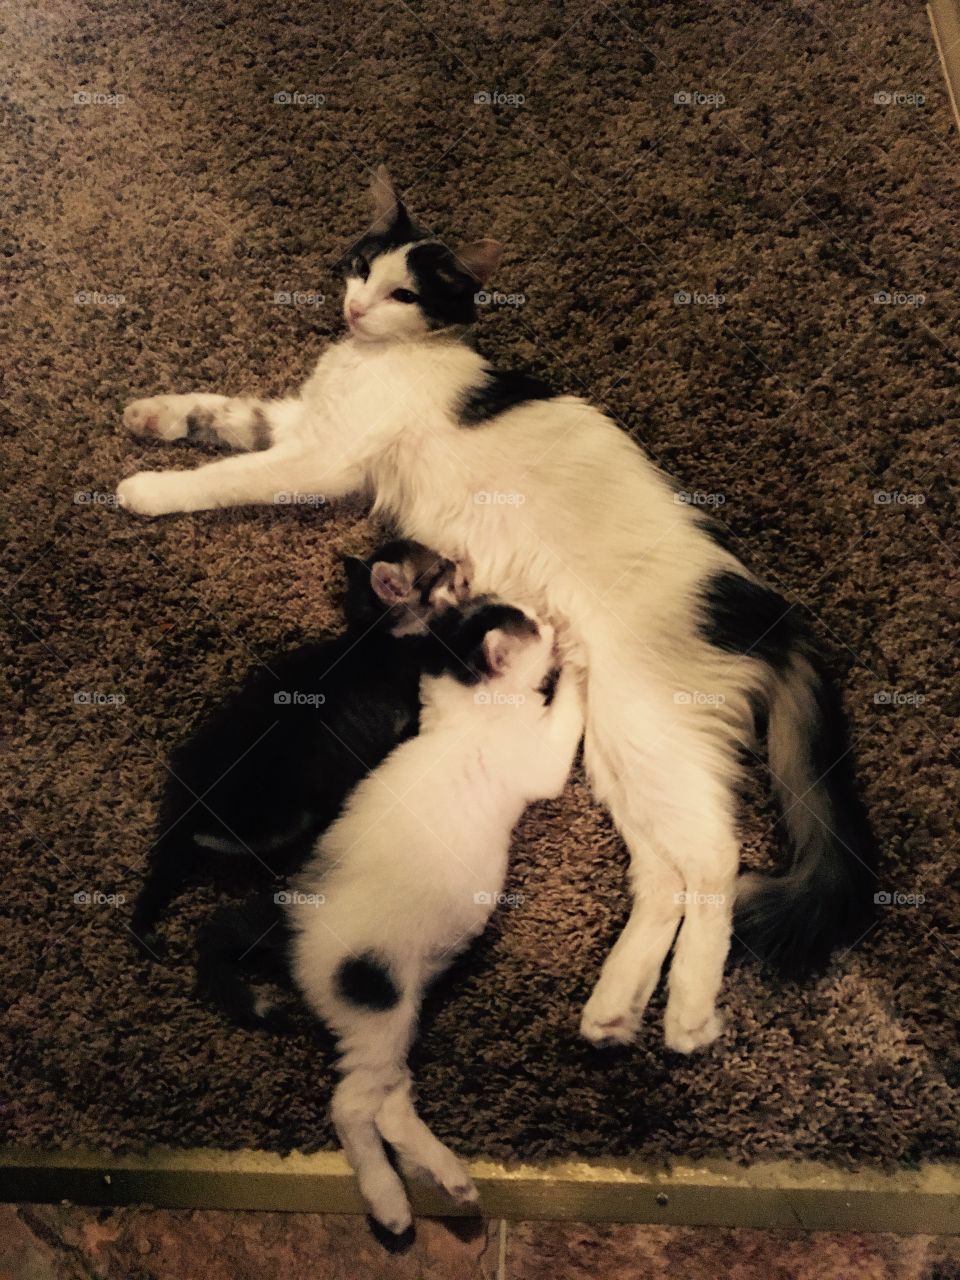 Nursing kittens.